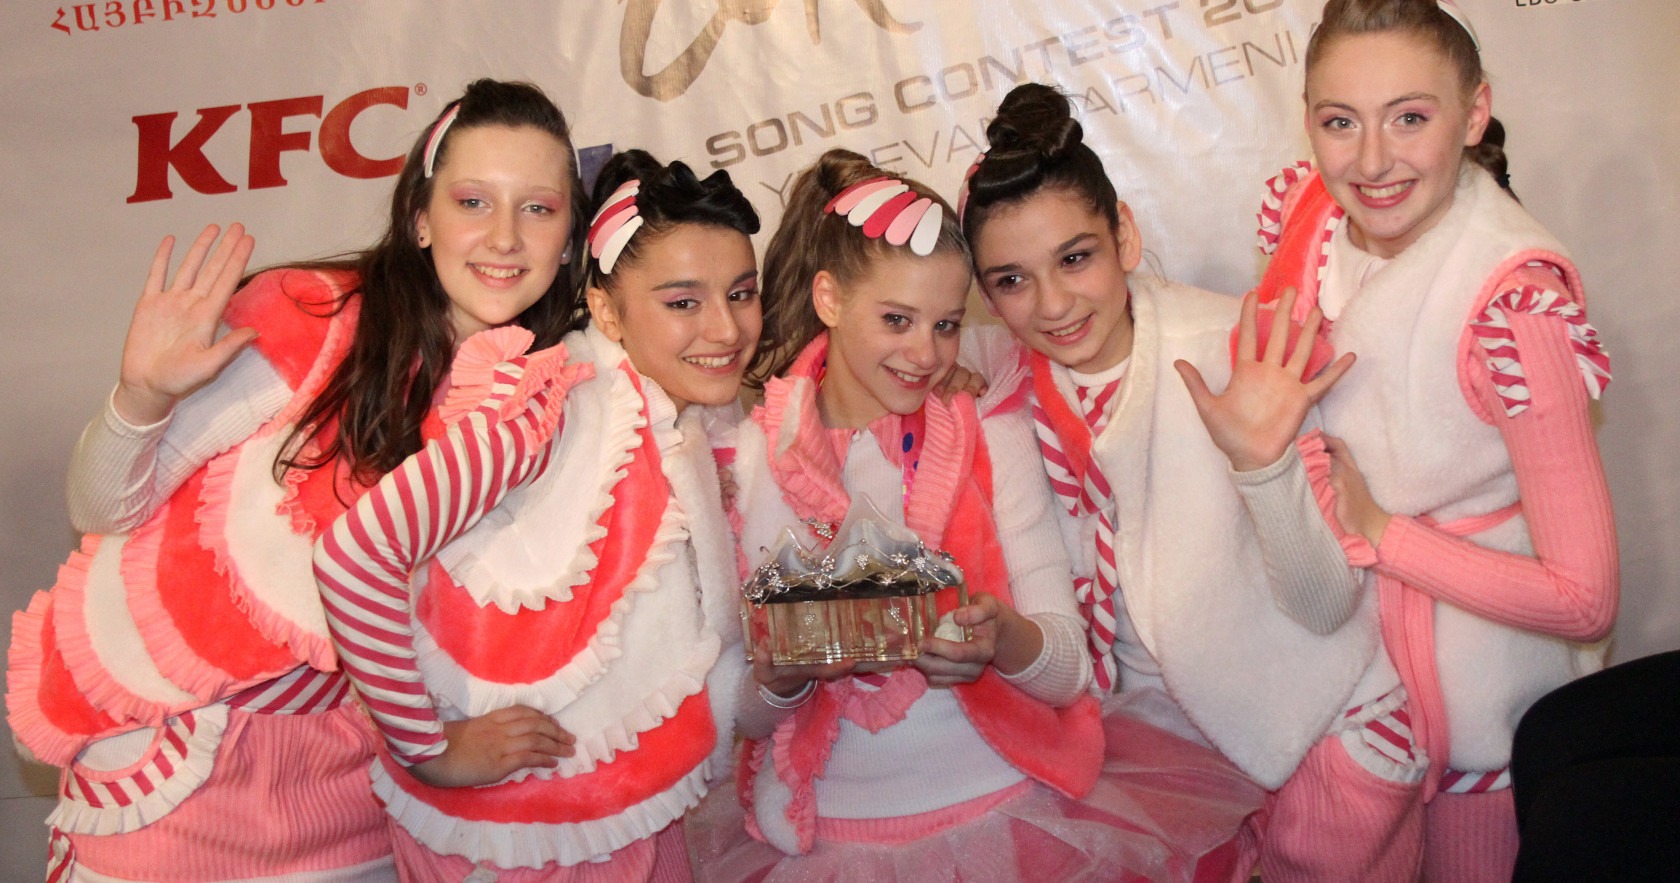 Vaikų eurovizijos nugalėtojai 2011: Candy - Candy Music